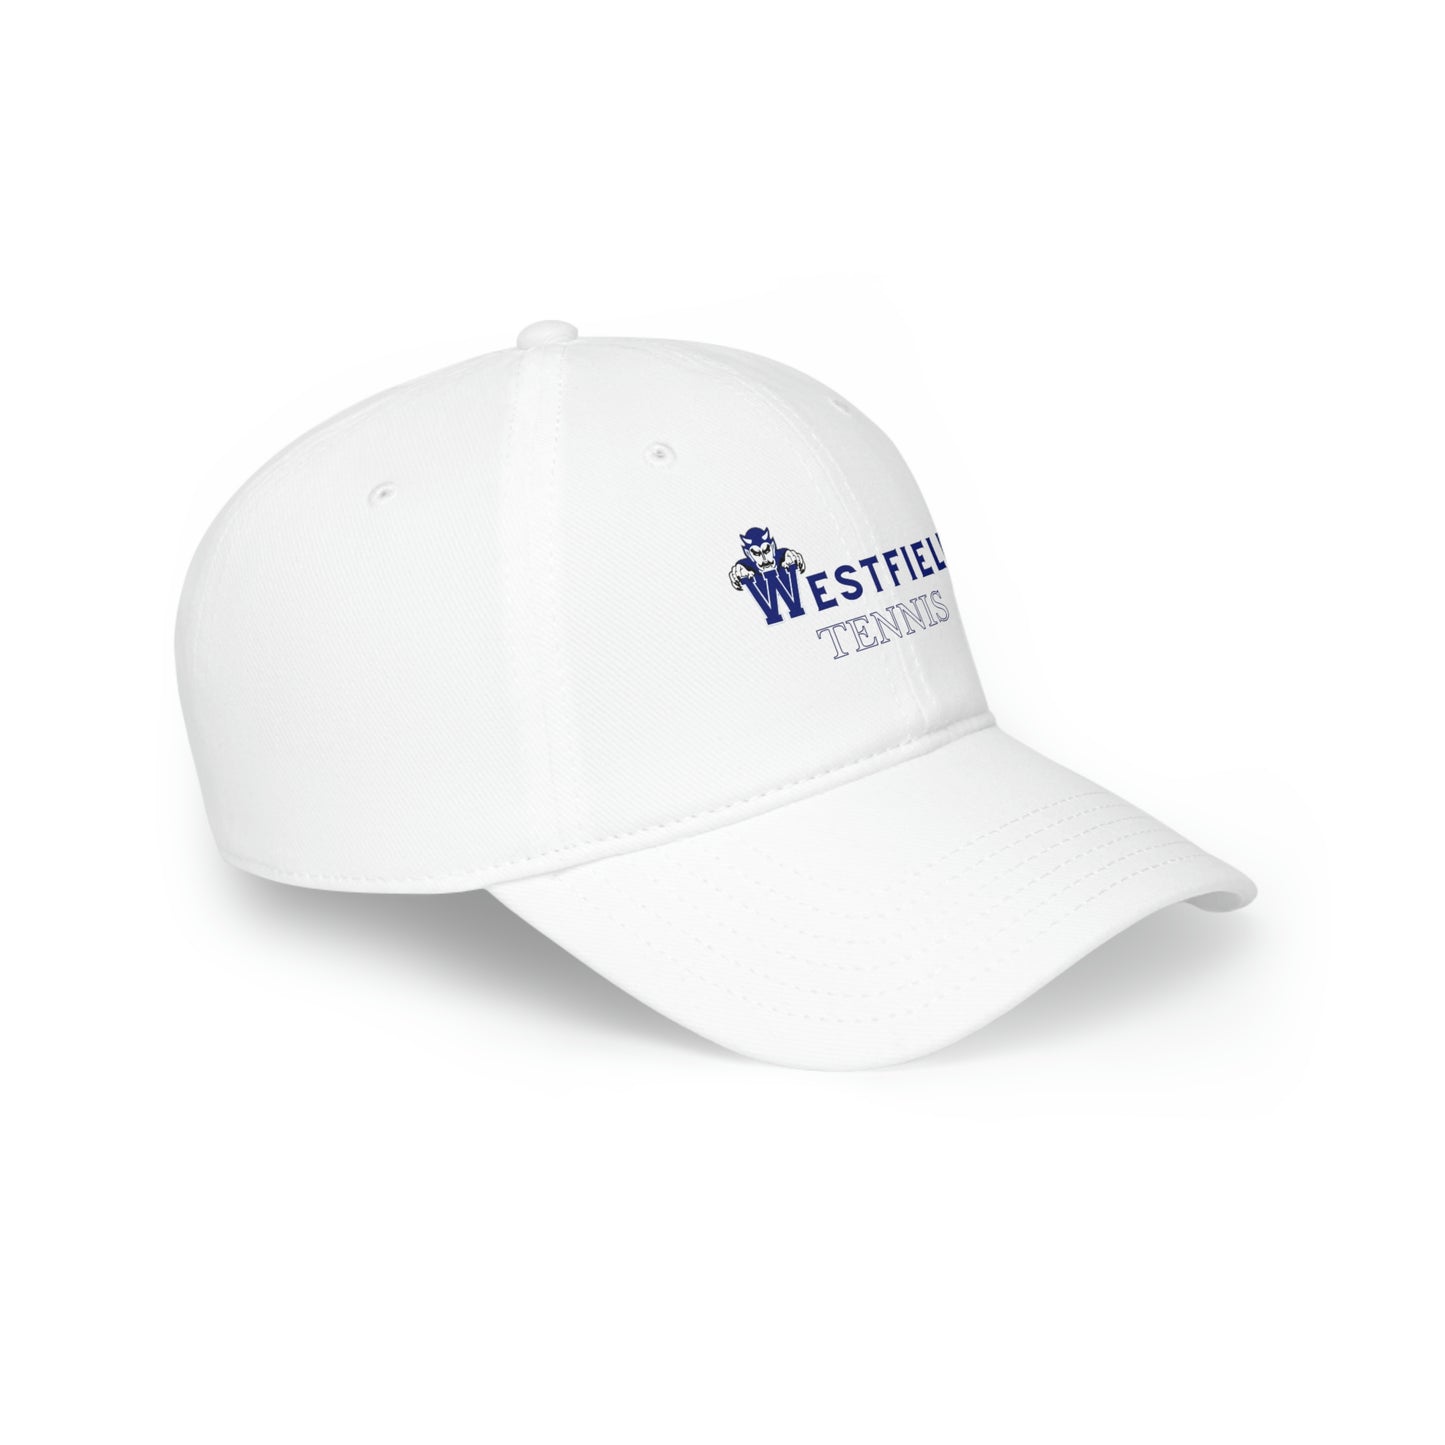 Westfield Tennis Hat